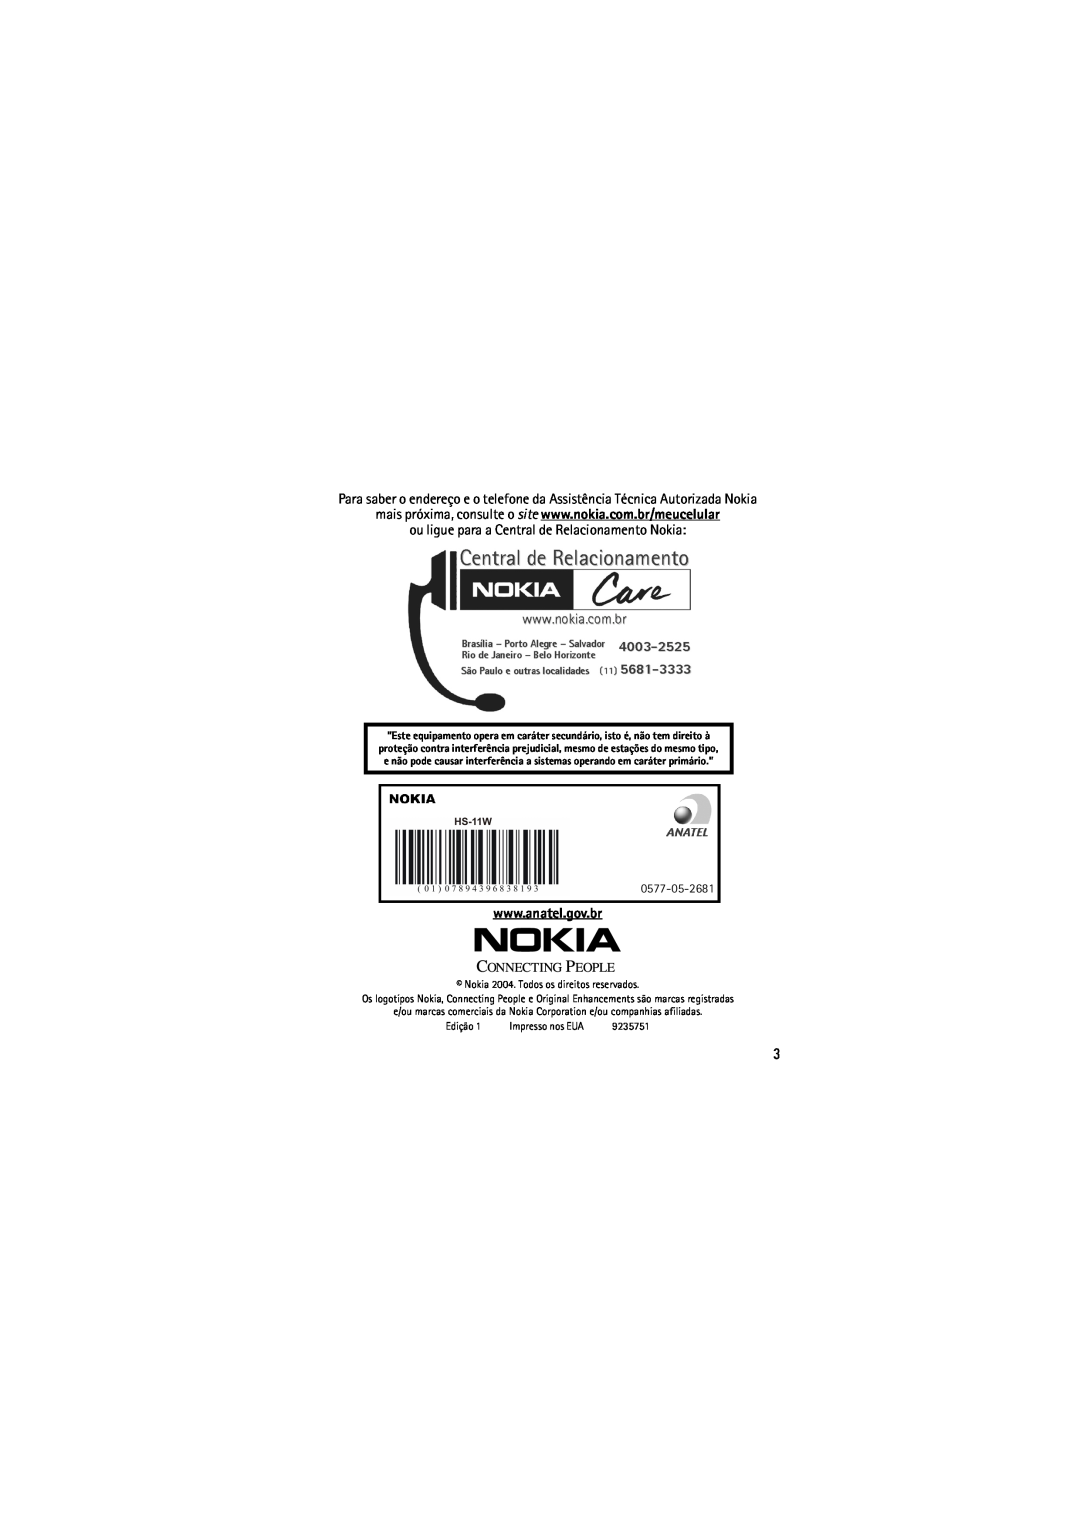 Nokia (HS-11W) manual ou ligue para a Central de Relacionamento Nokia 